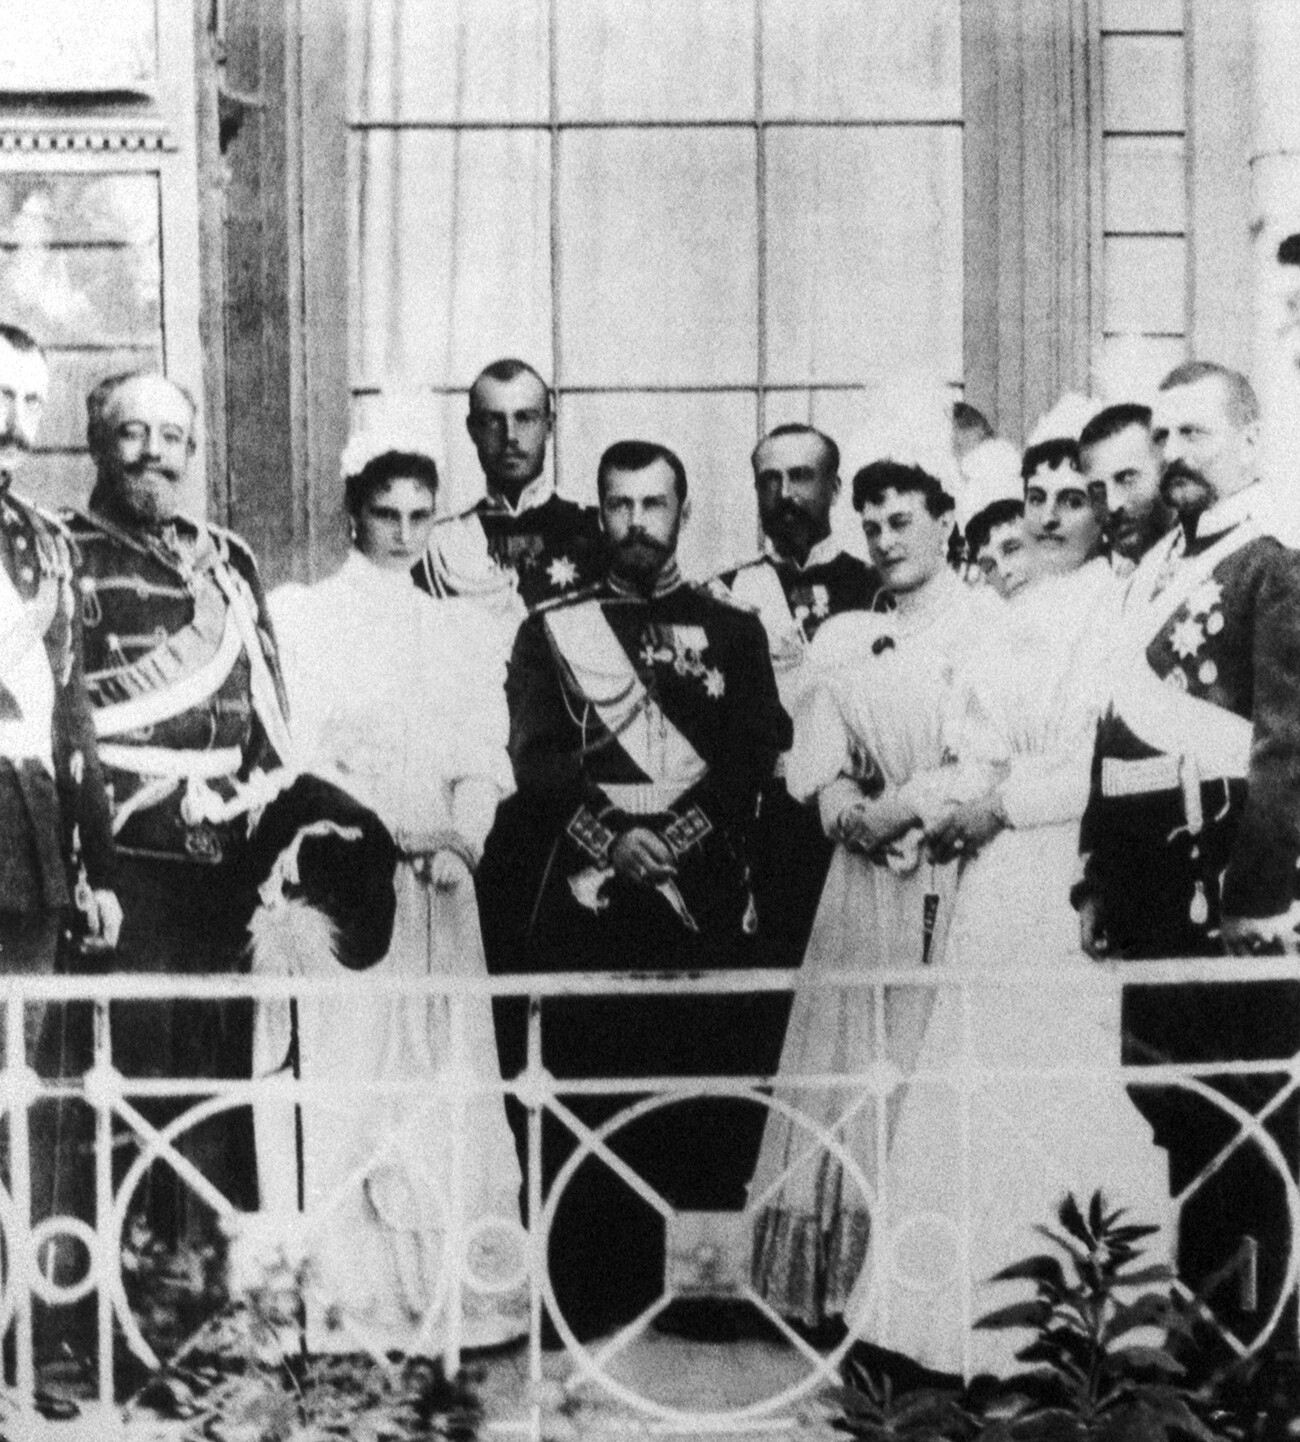 Николай II (в центре) и члены царской семьи на балконе Ливадийского дворца